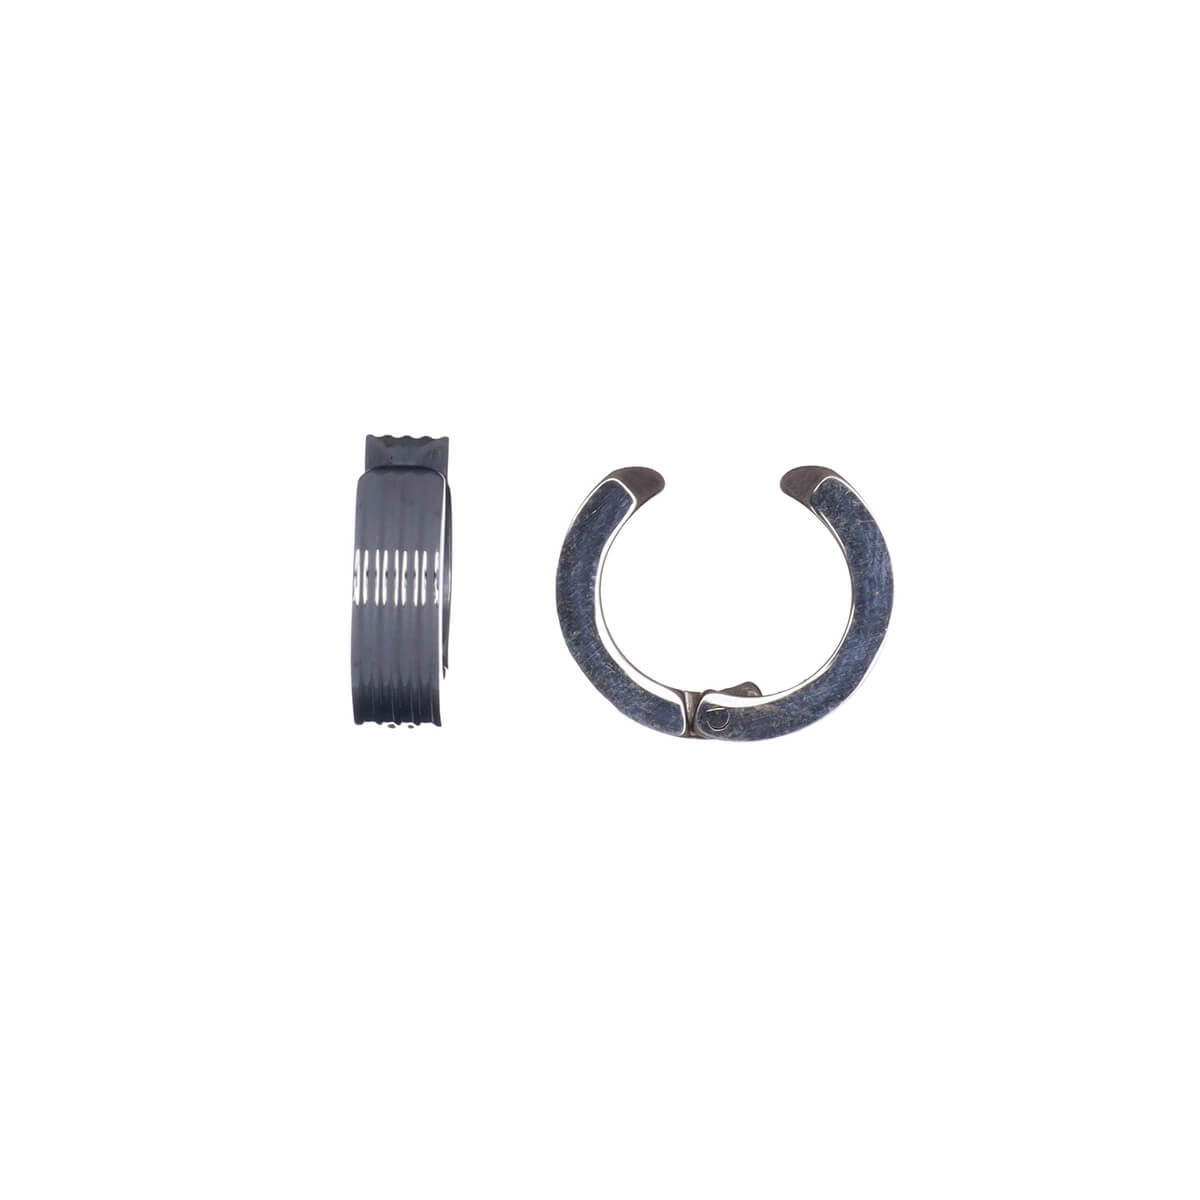 Ring clip earrings 4mm (steel 316L)